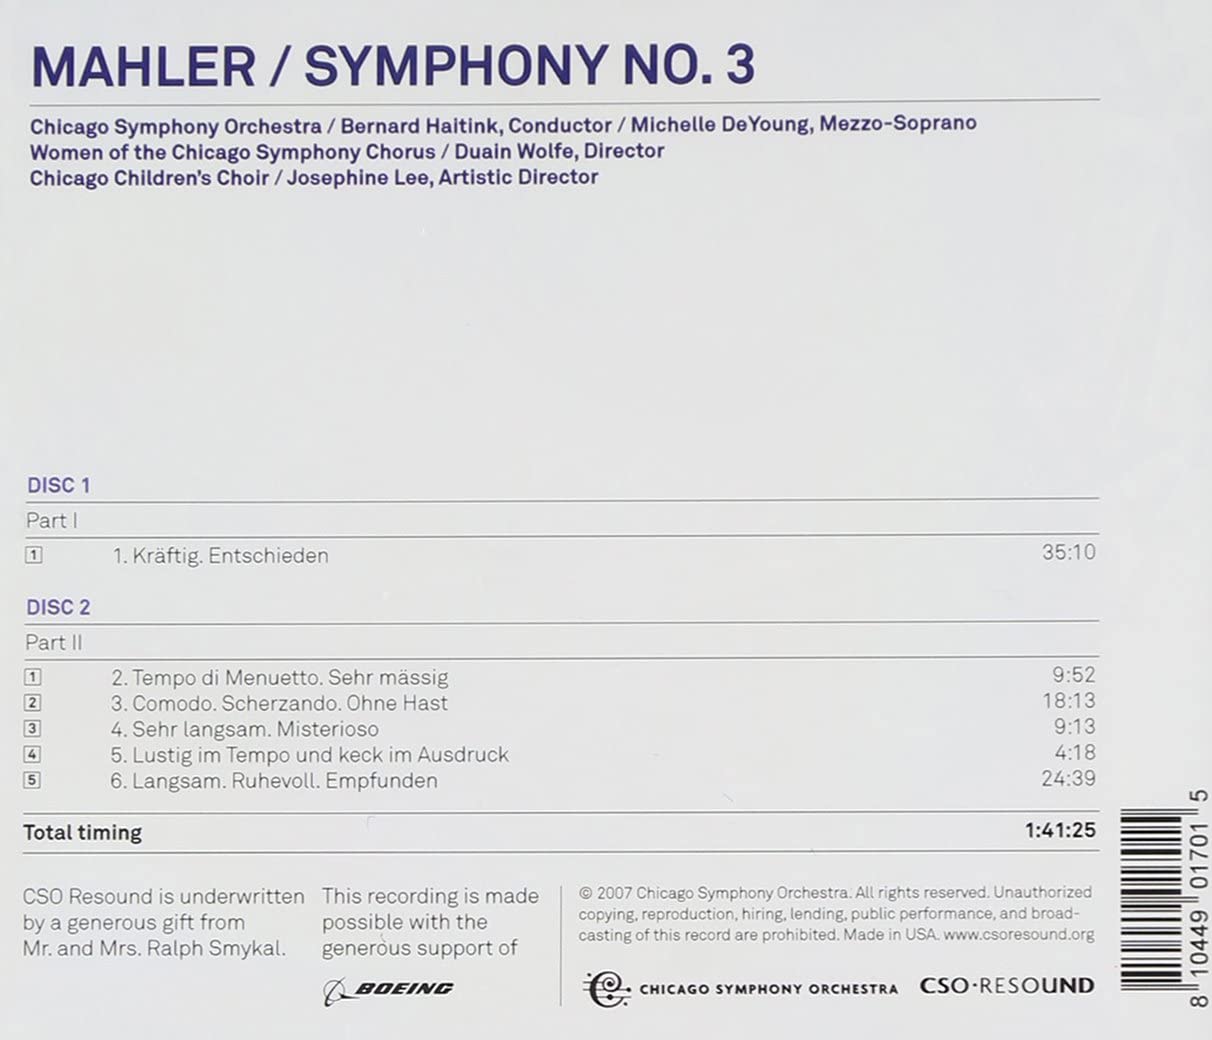 Mahler: Symphony no. 3 - slide-1